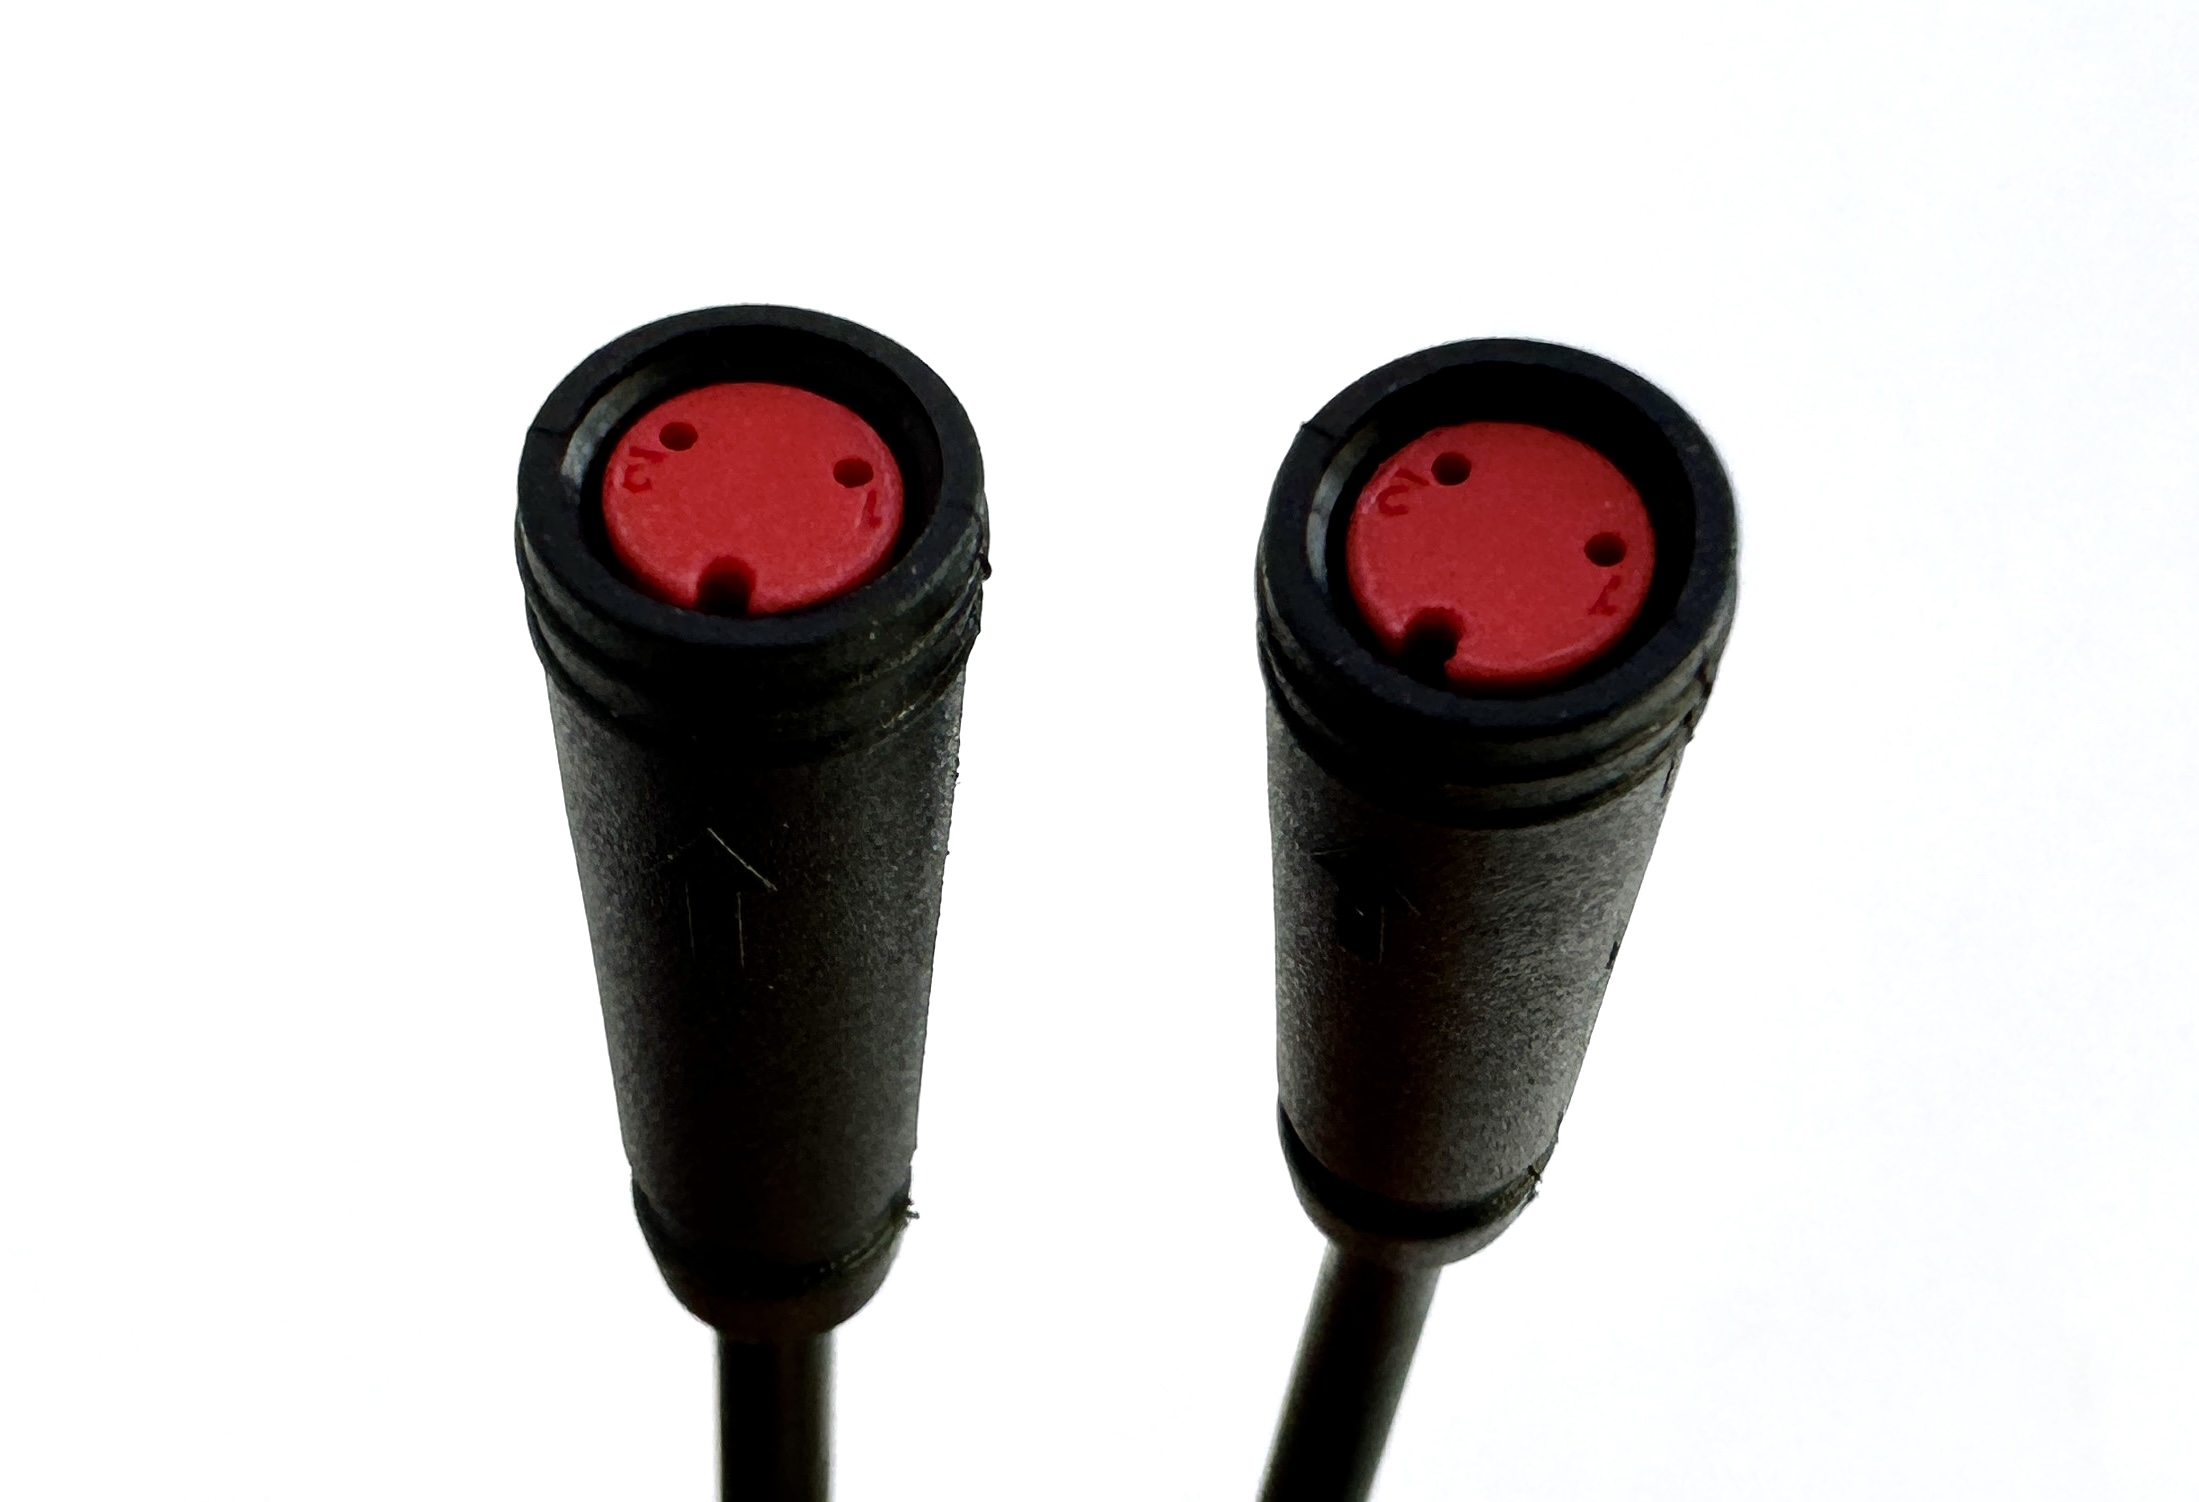 HIGO / Julet cable adaptador de 10,5 cm para ebike, 2 PIN hembra a hembra, rojo